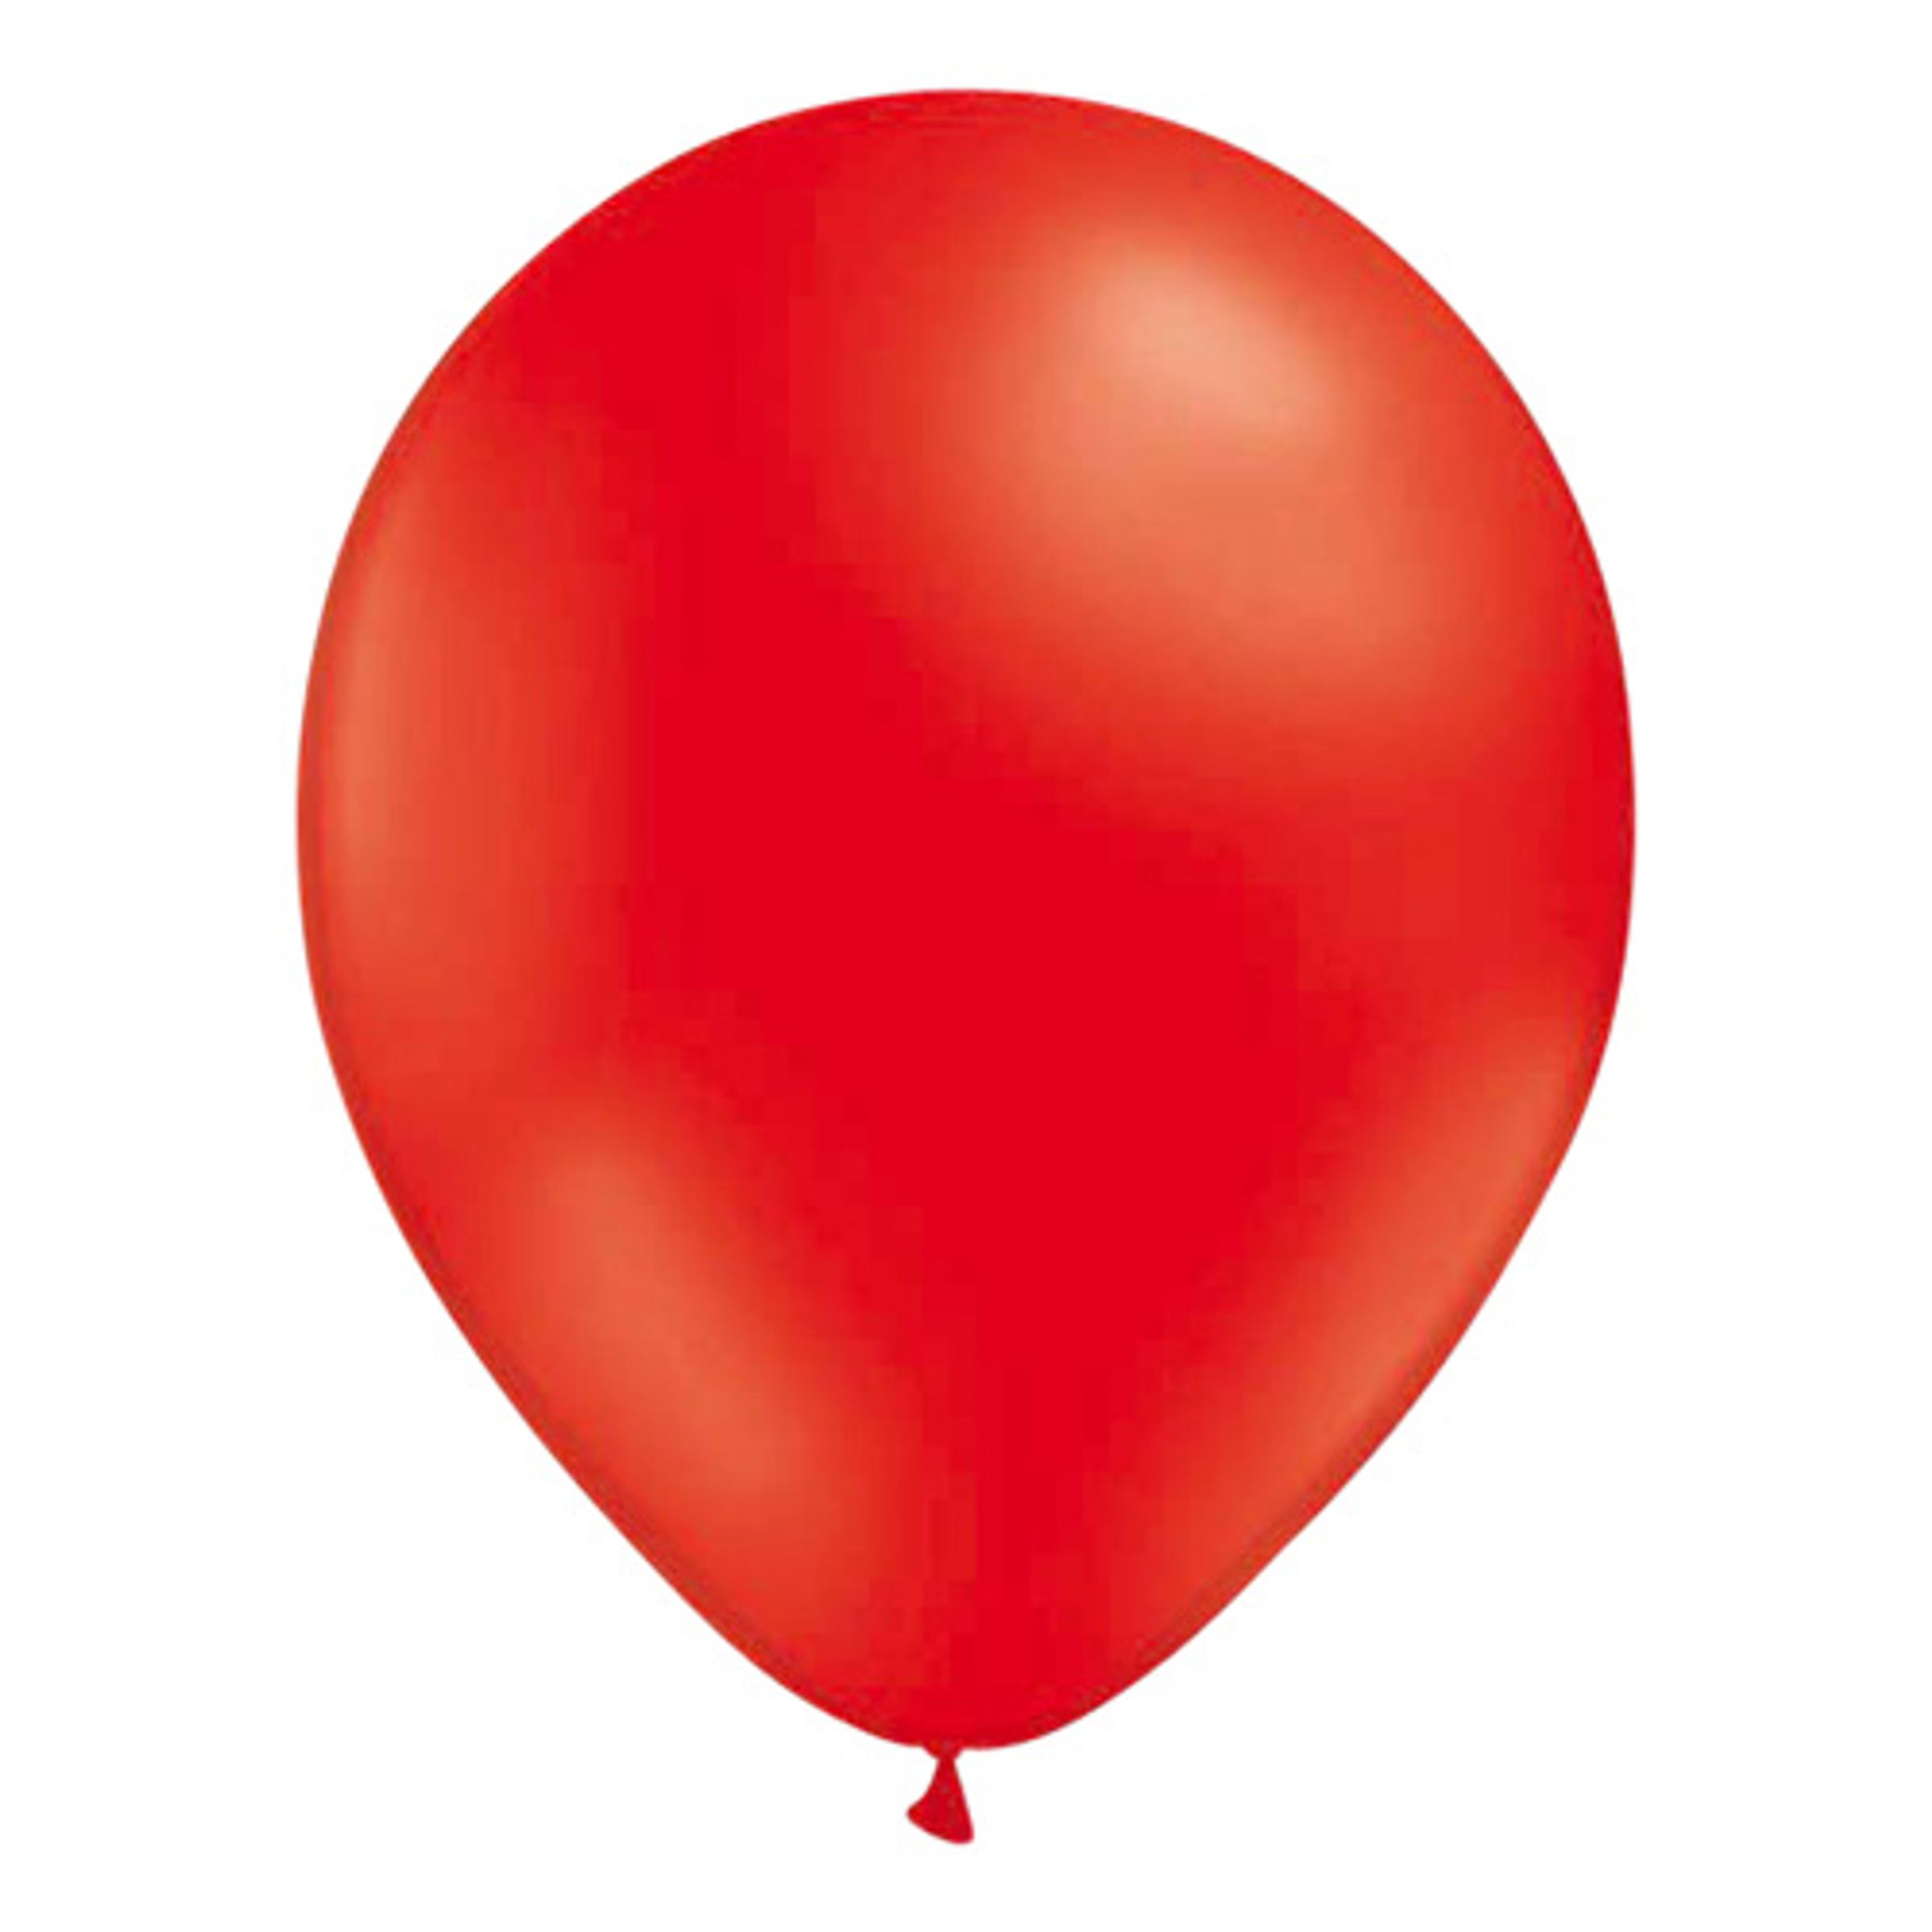 Ballonger Röda - 25-pack